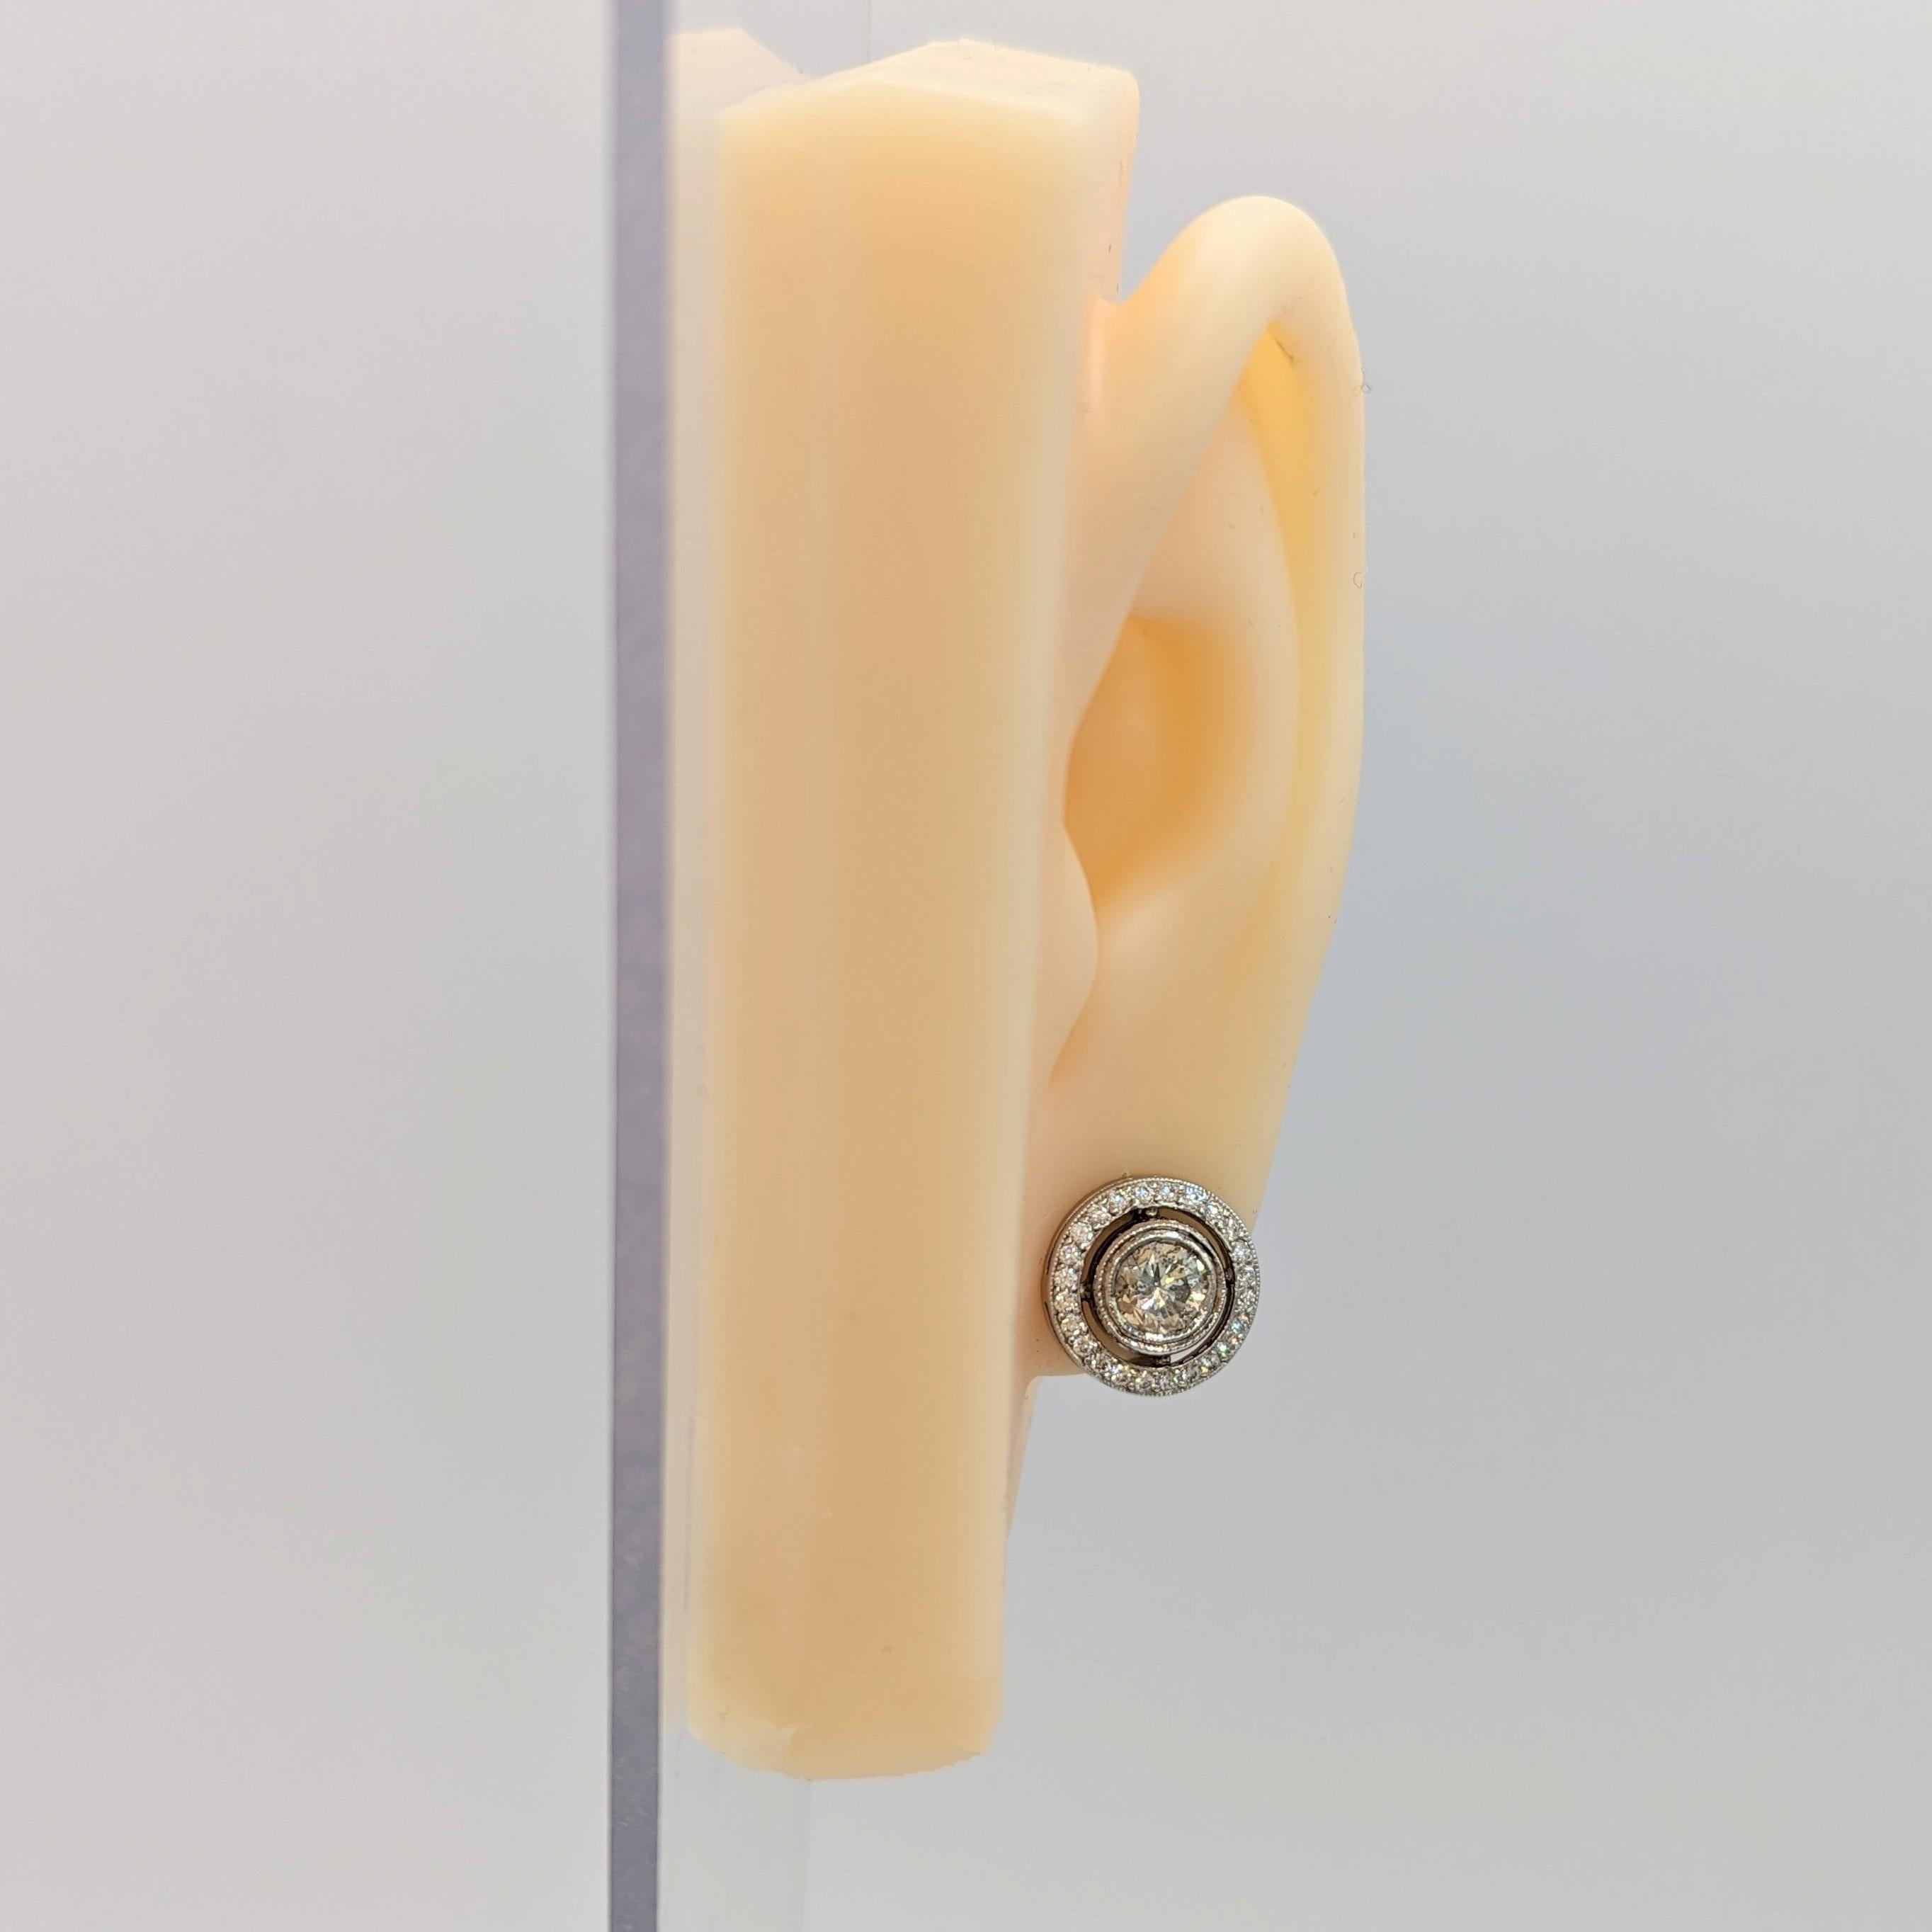 Wunderschön gearbeitetes Paar Ohrringe mit weißen Diamanten, gefasst in 18 Karat Weißgold mit Halo. Dieses Paar Ohrringe wiegt 5,80 Gramm.
